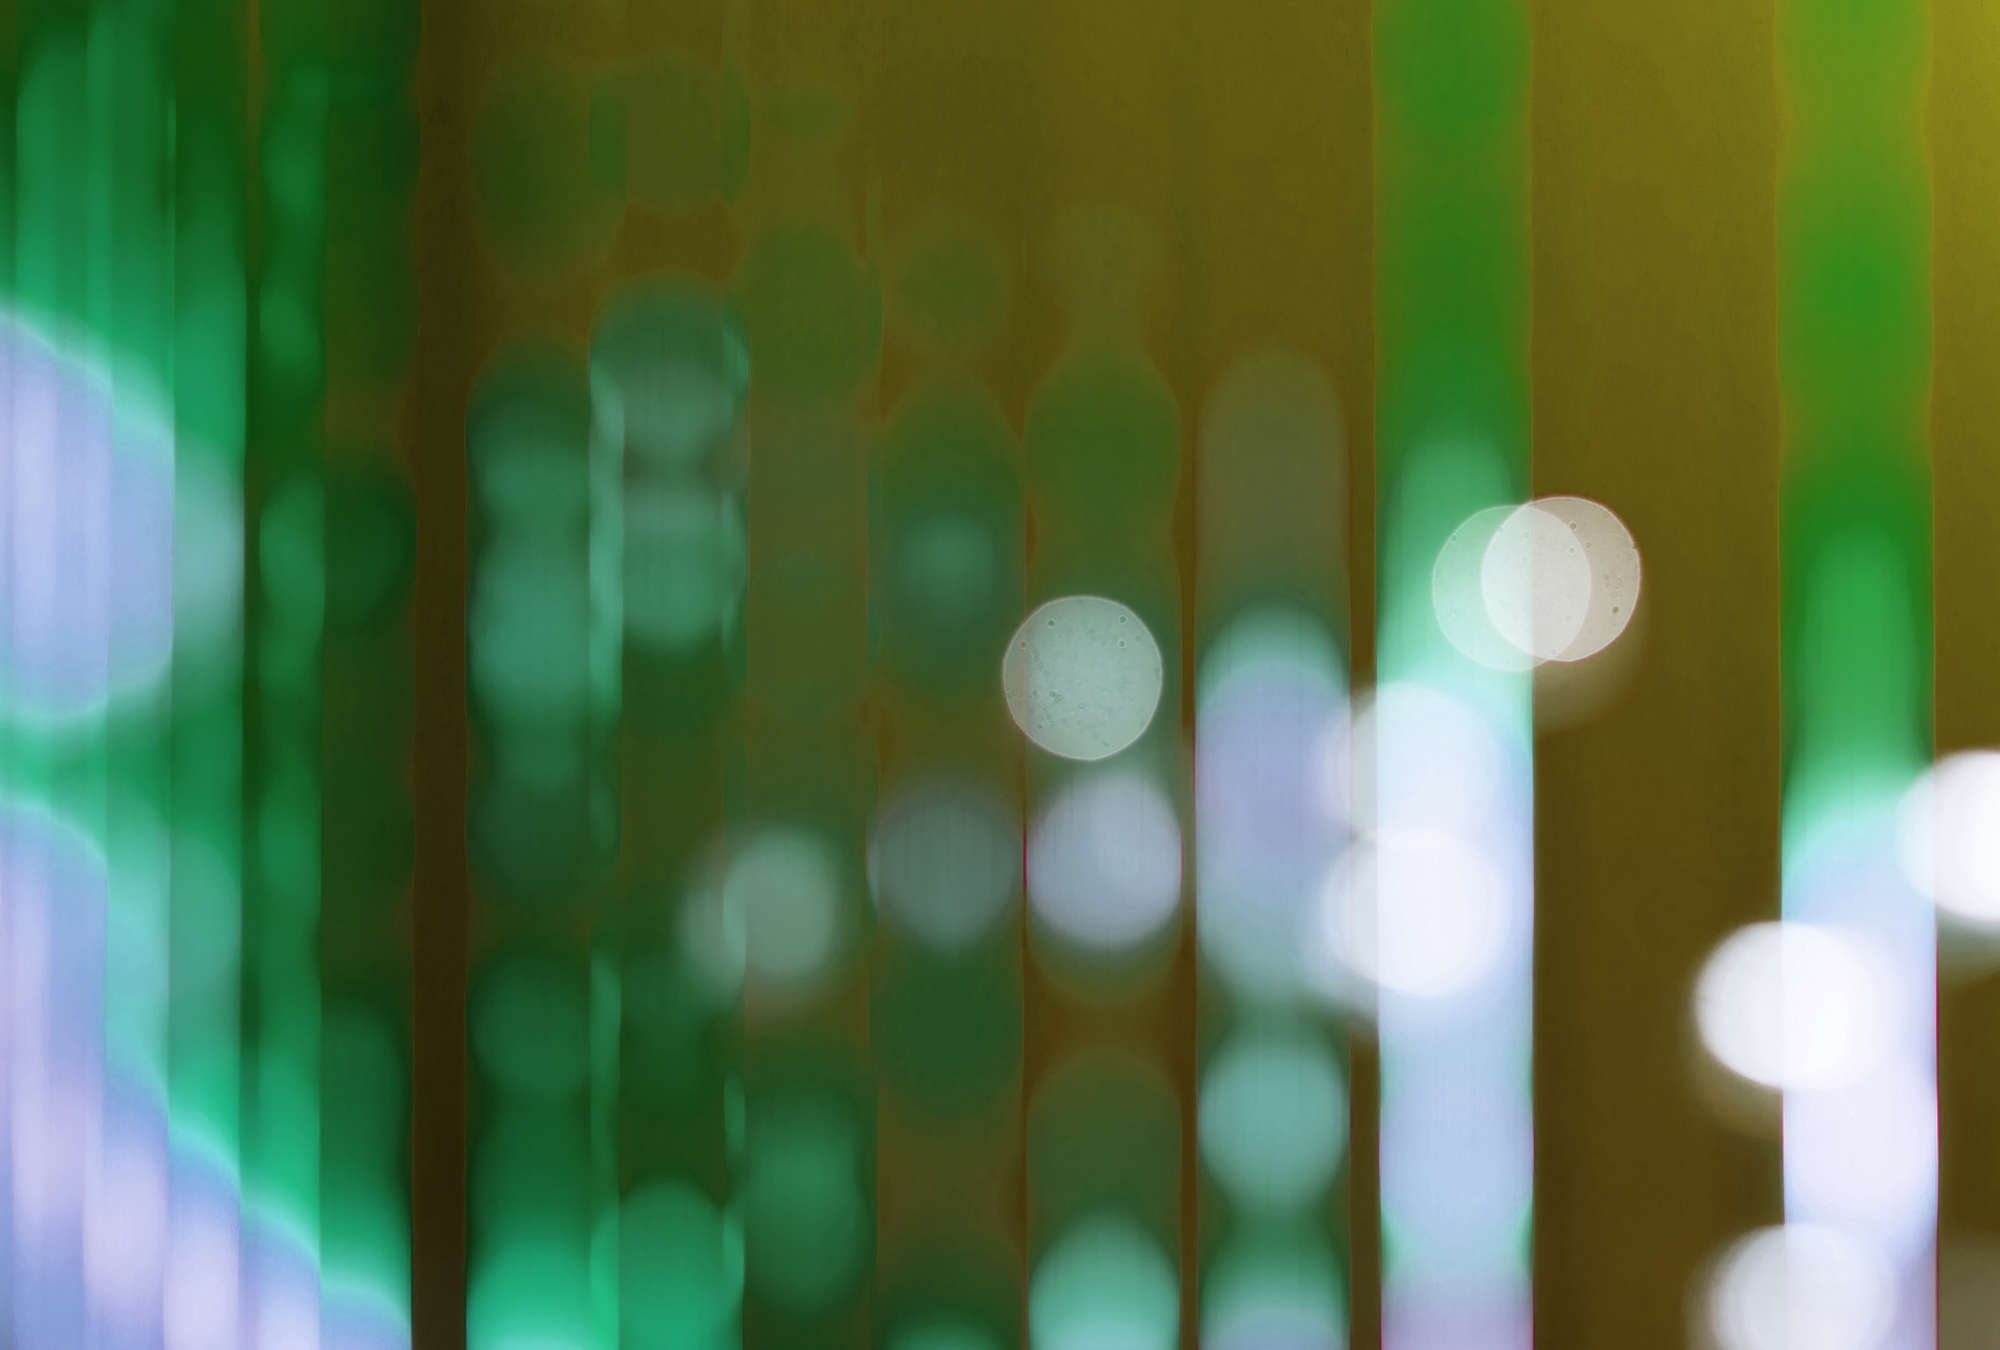             Big City Lights 2 - Digital behang met lichtreflecties in groen - Geel, Groen | Matte gladde vlieseline
        